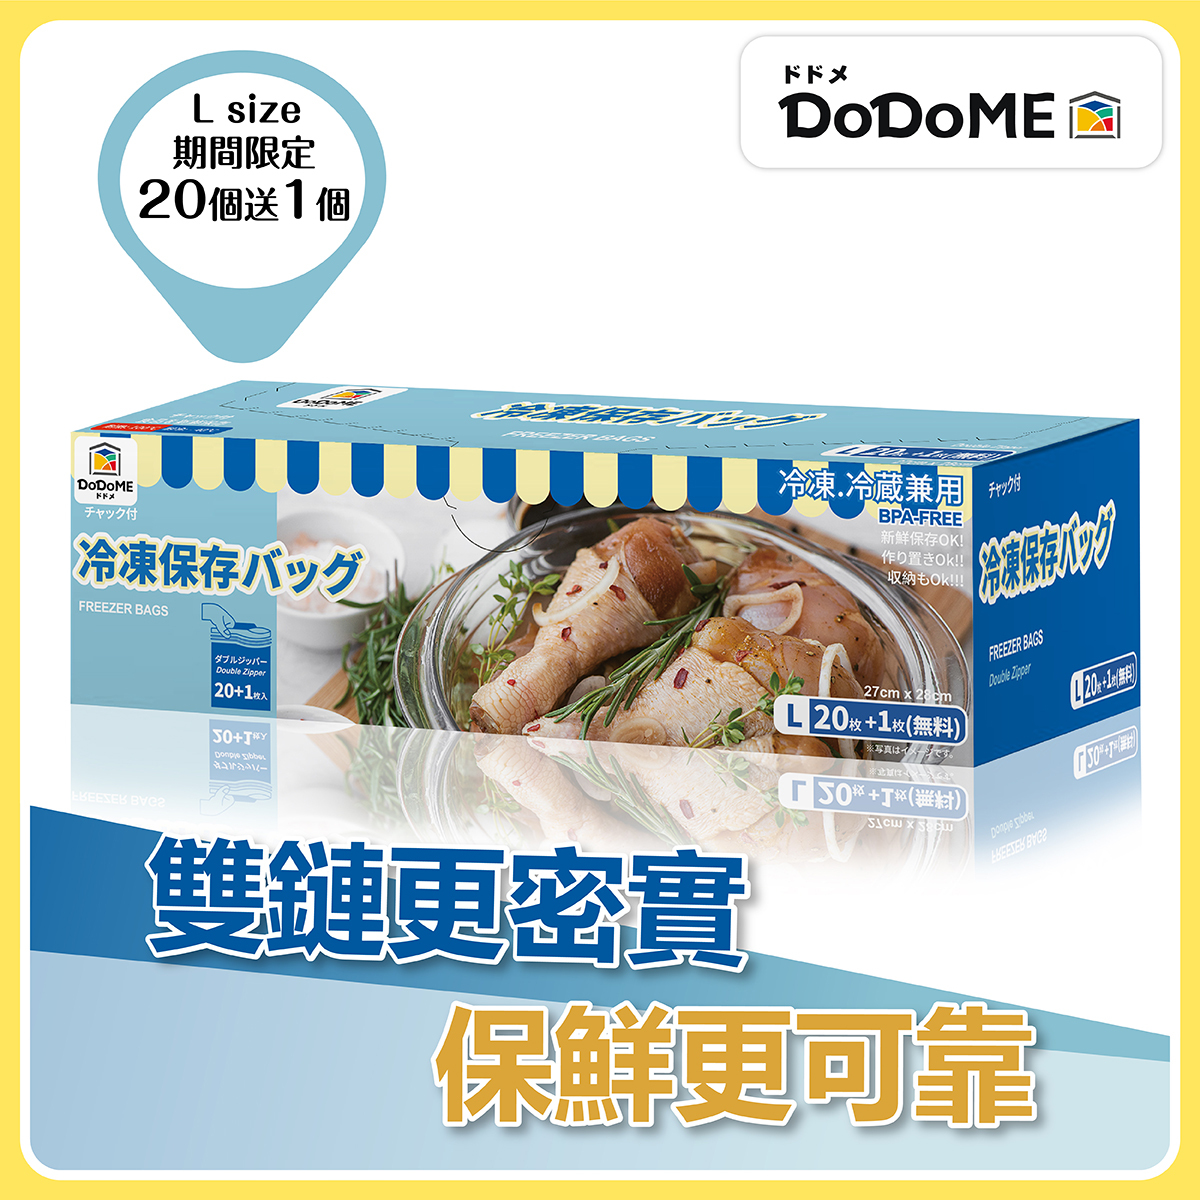 DoDoME   雙重鎖緊密實收納袋+1枚大袋   HKTVmall 香港最大網購平台